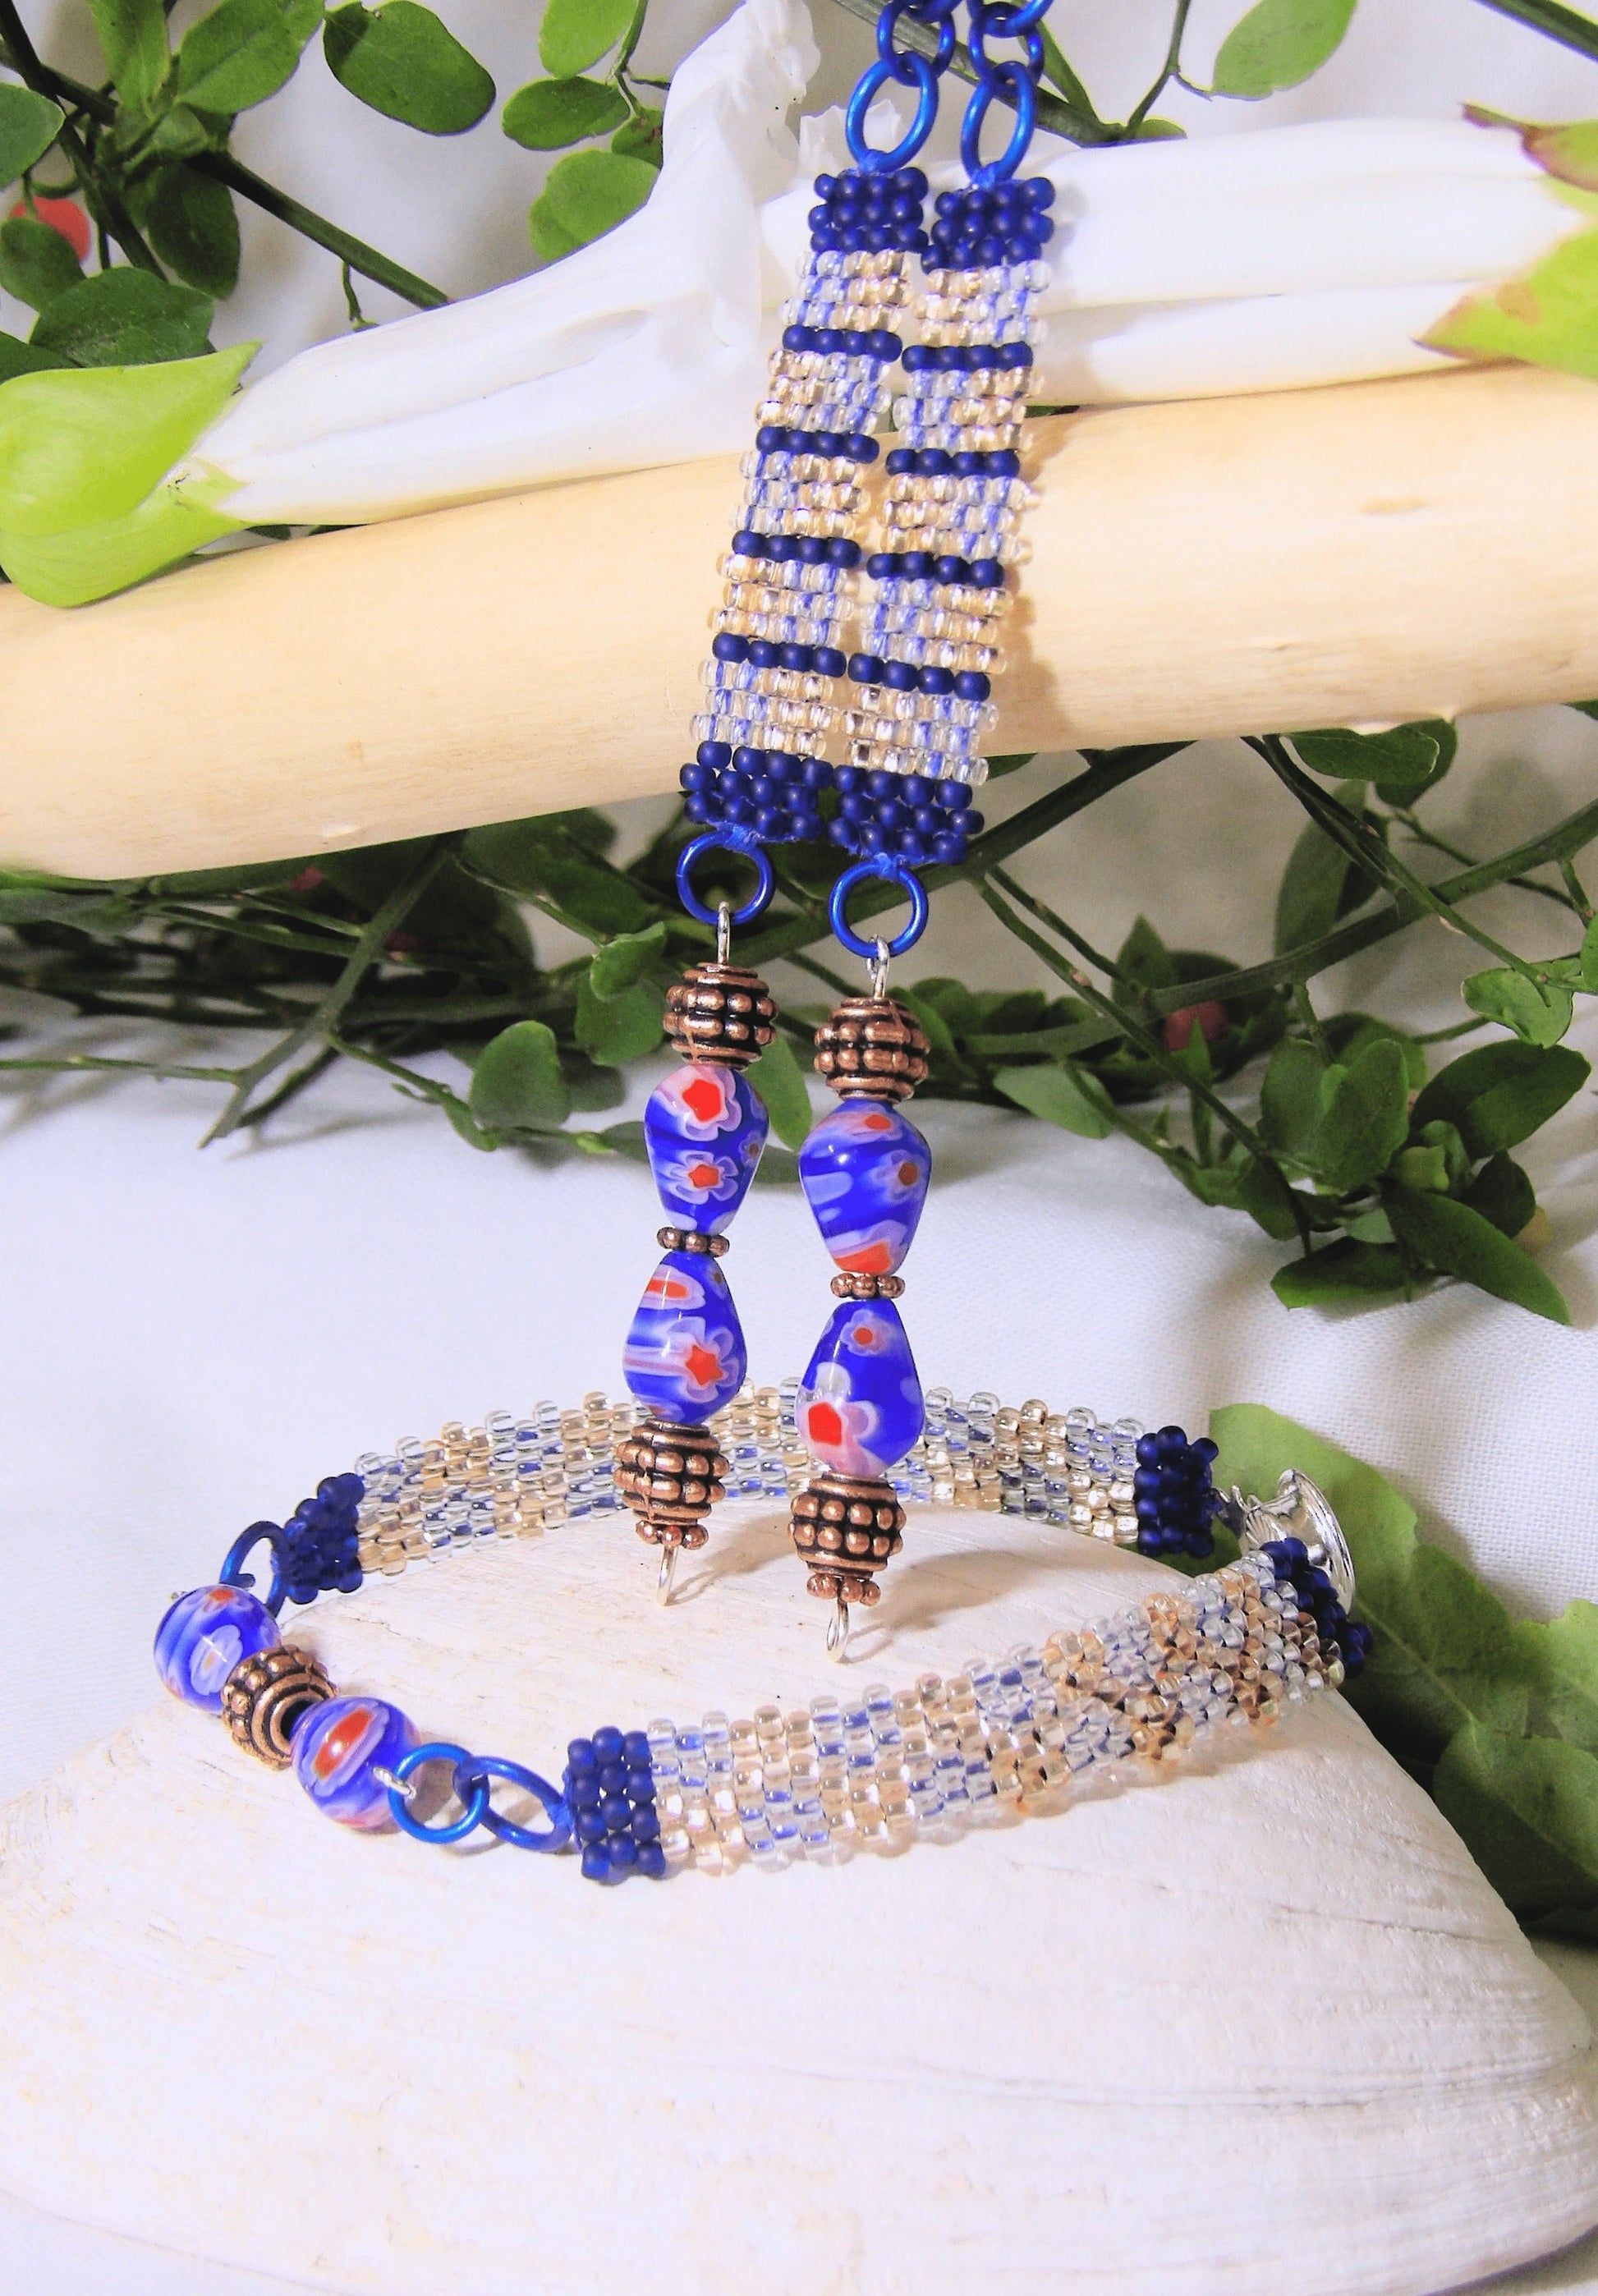 Handmade Boho Jewelry Set - Czech Glass Seed Bead Bracelet & Dangle Earrings w/Blue Millefiori | Art Deco Statement Jewelry | Ladies Gift